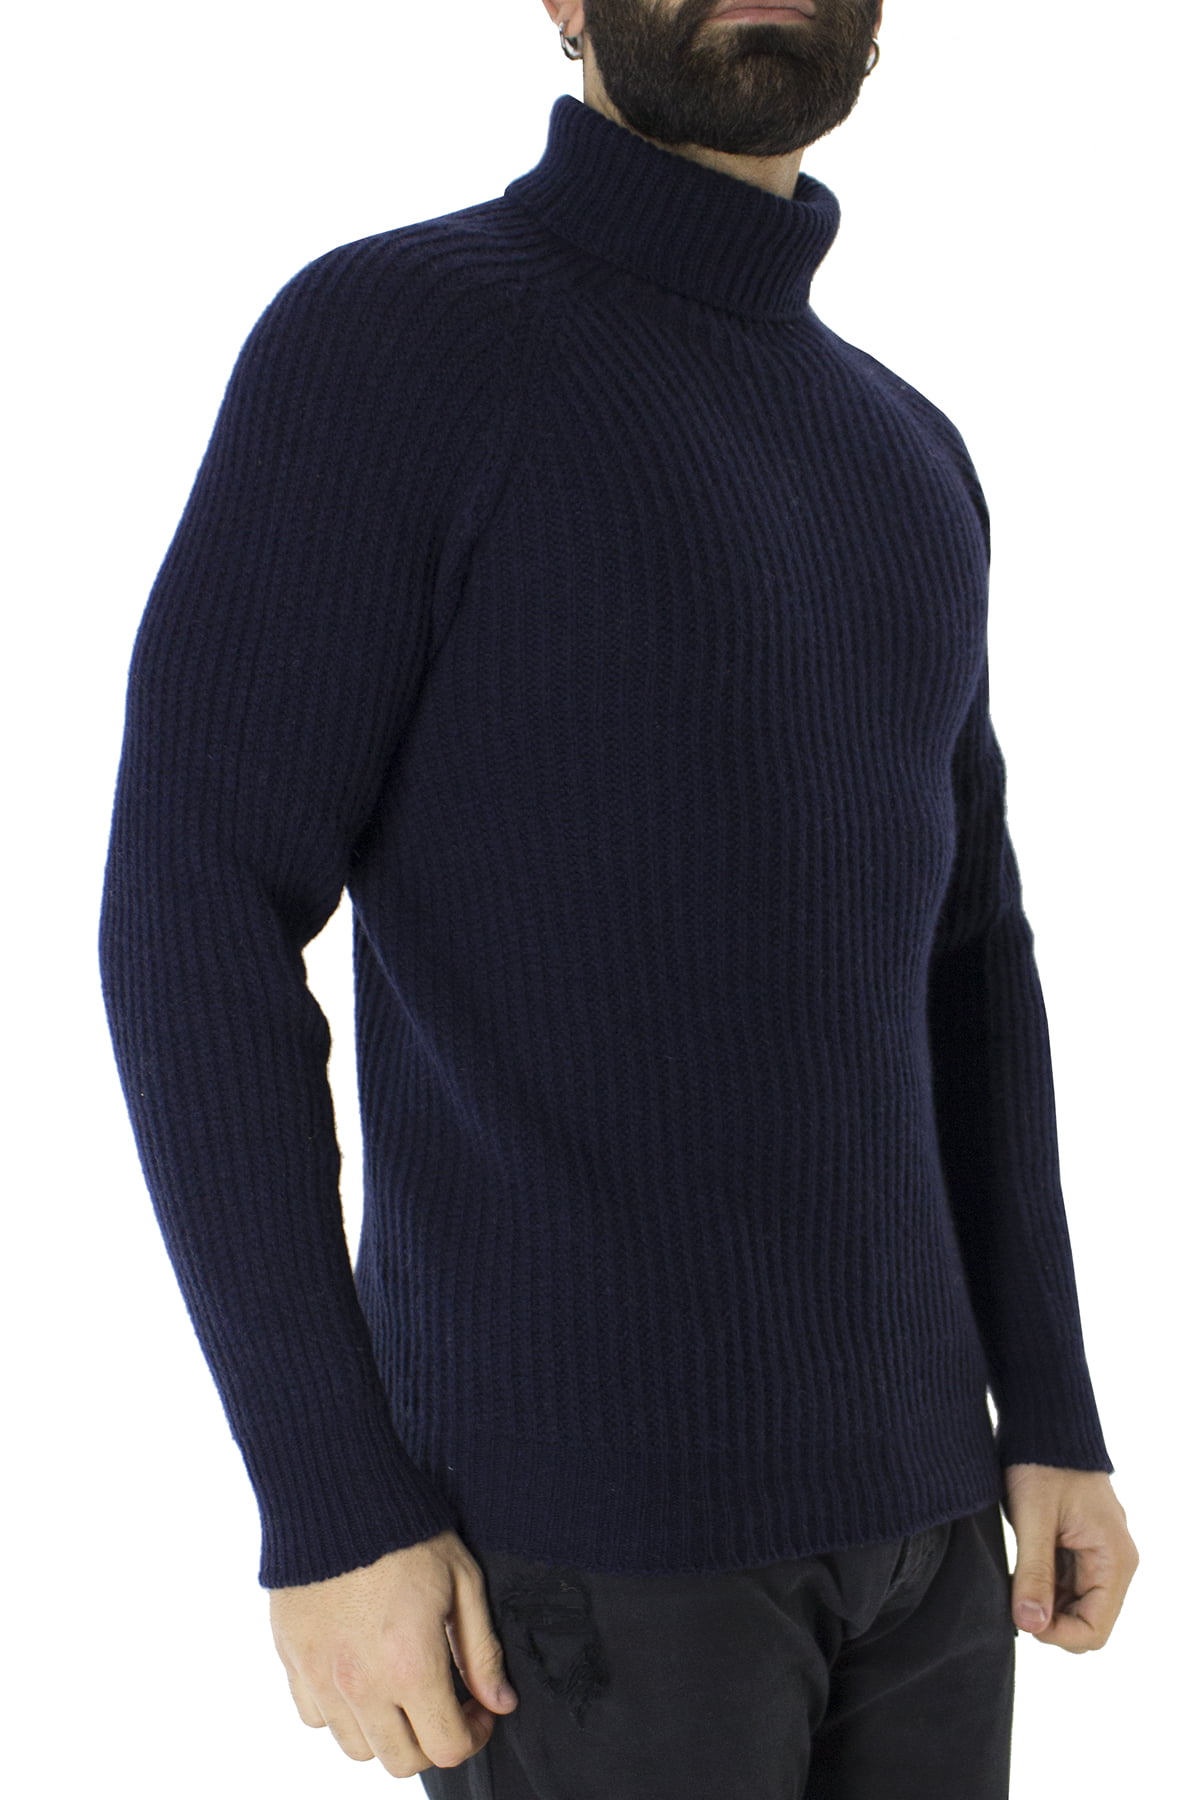 Maglione uomo collo alto Blu in lana merinos a costa inglese slim fit made in italy